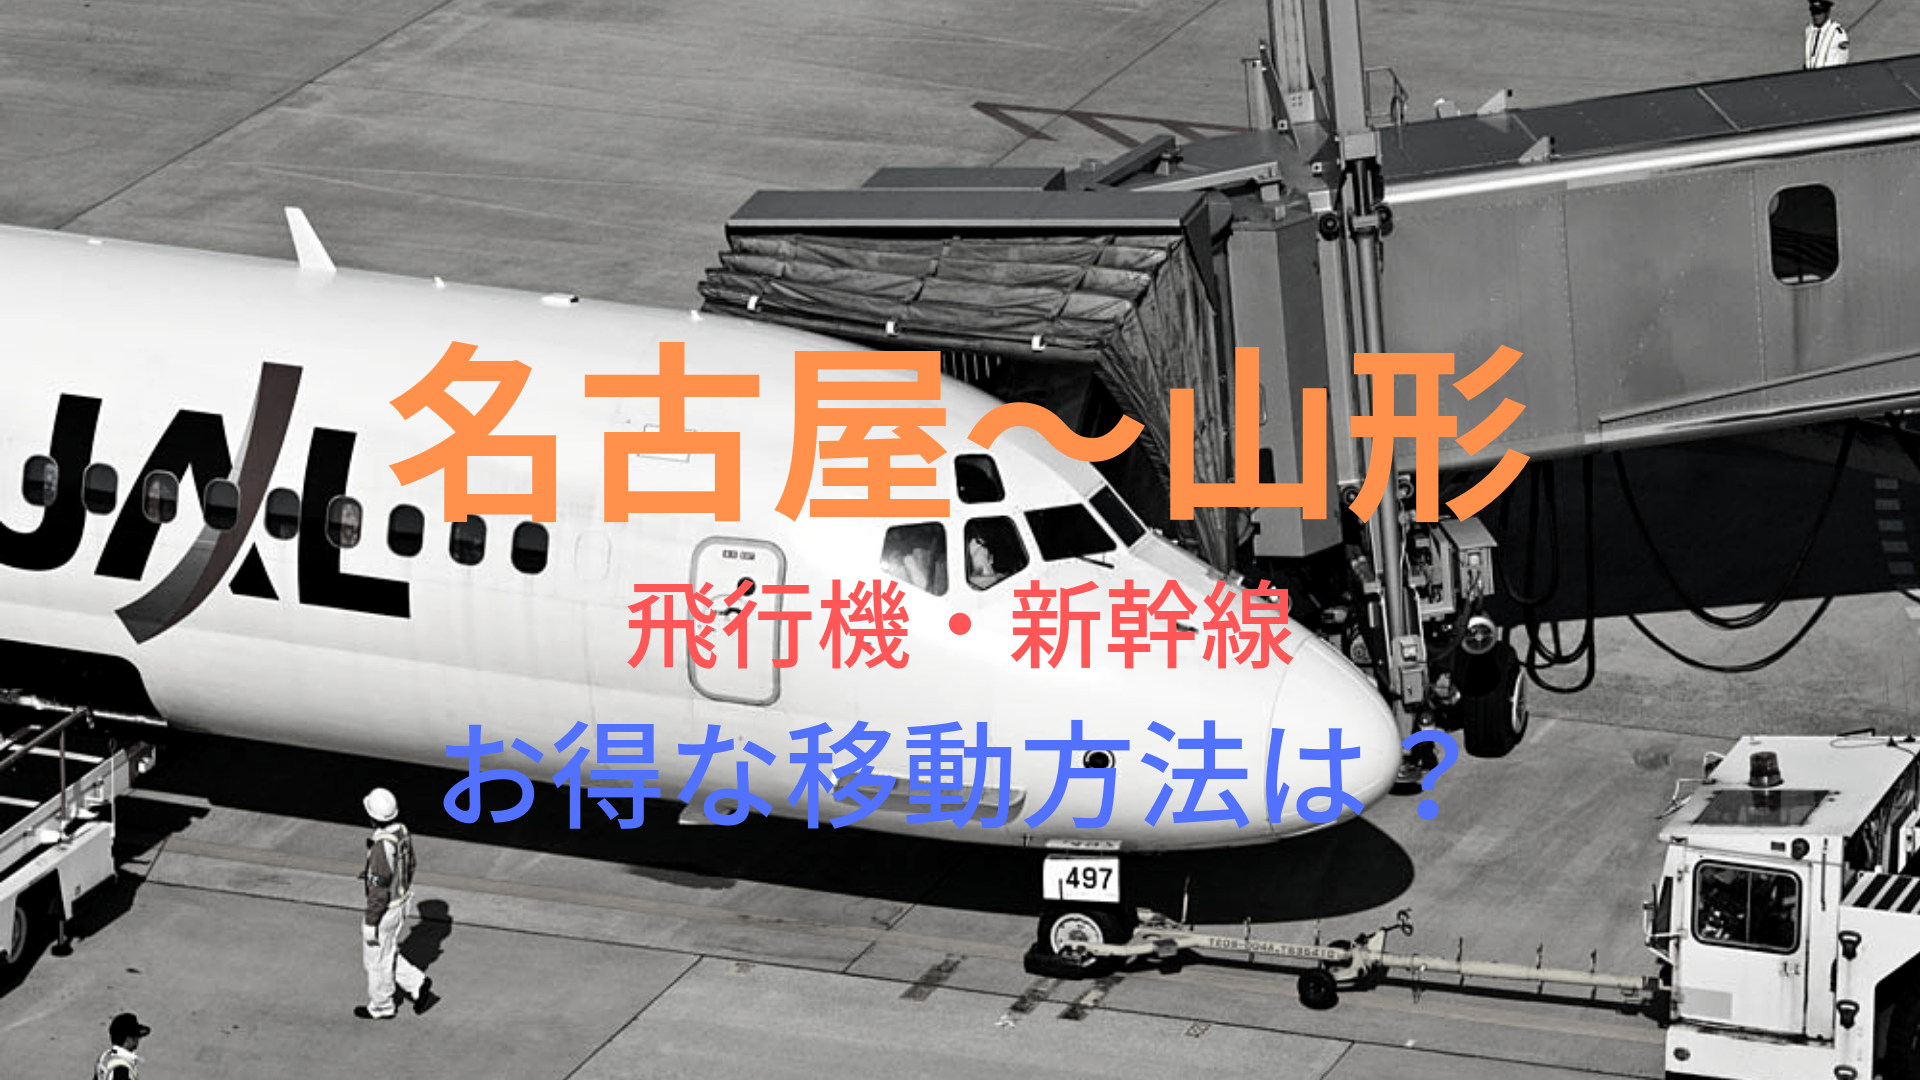 名古屋 山形 円 格安で移動する方法は 飛行機 新幹線をそれぞれ比較 ばしたく交通